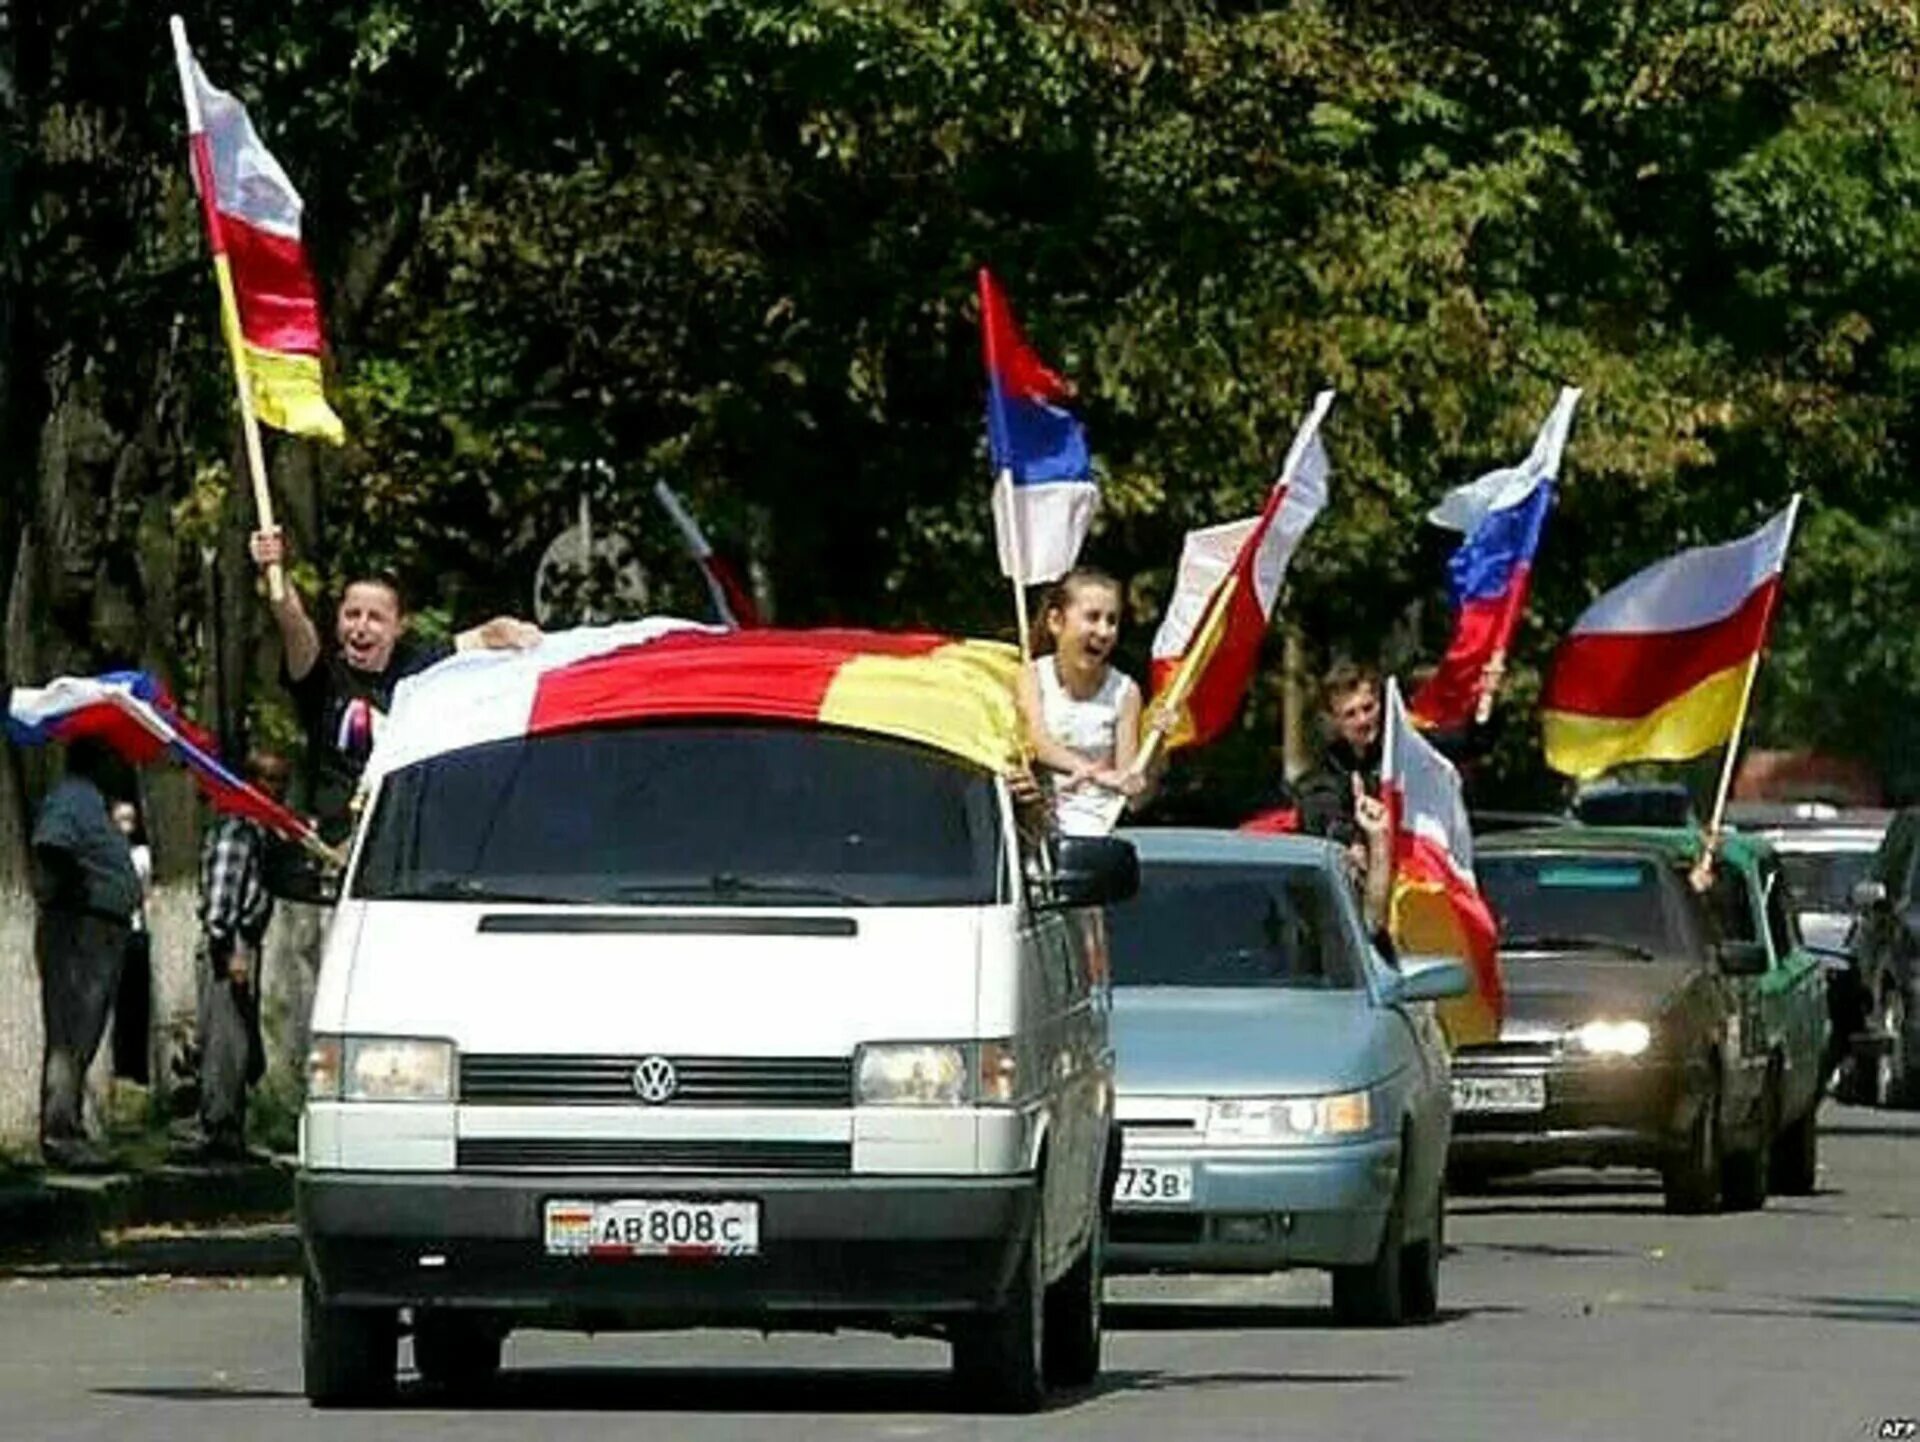 26 Августа 2008 Южная Осетия. 26 Августа 2008 независимость Южной Осетии. 17 Июля референдум в Южной Осетии. Признание Россией независимости Абхазии и Южной Осетии. Осетия вхождения